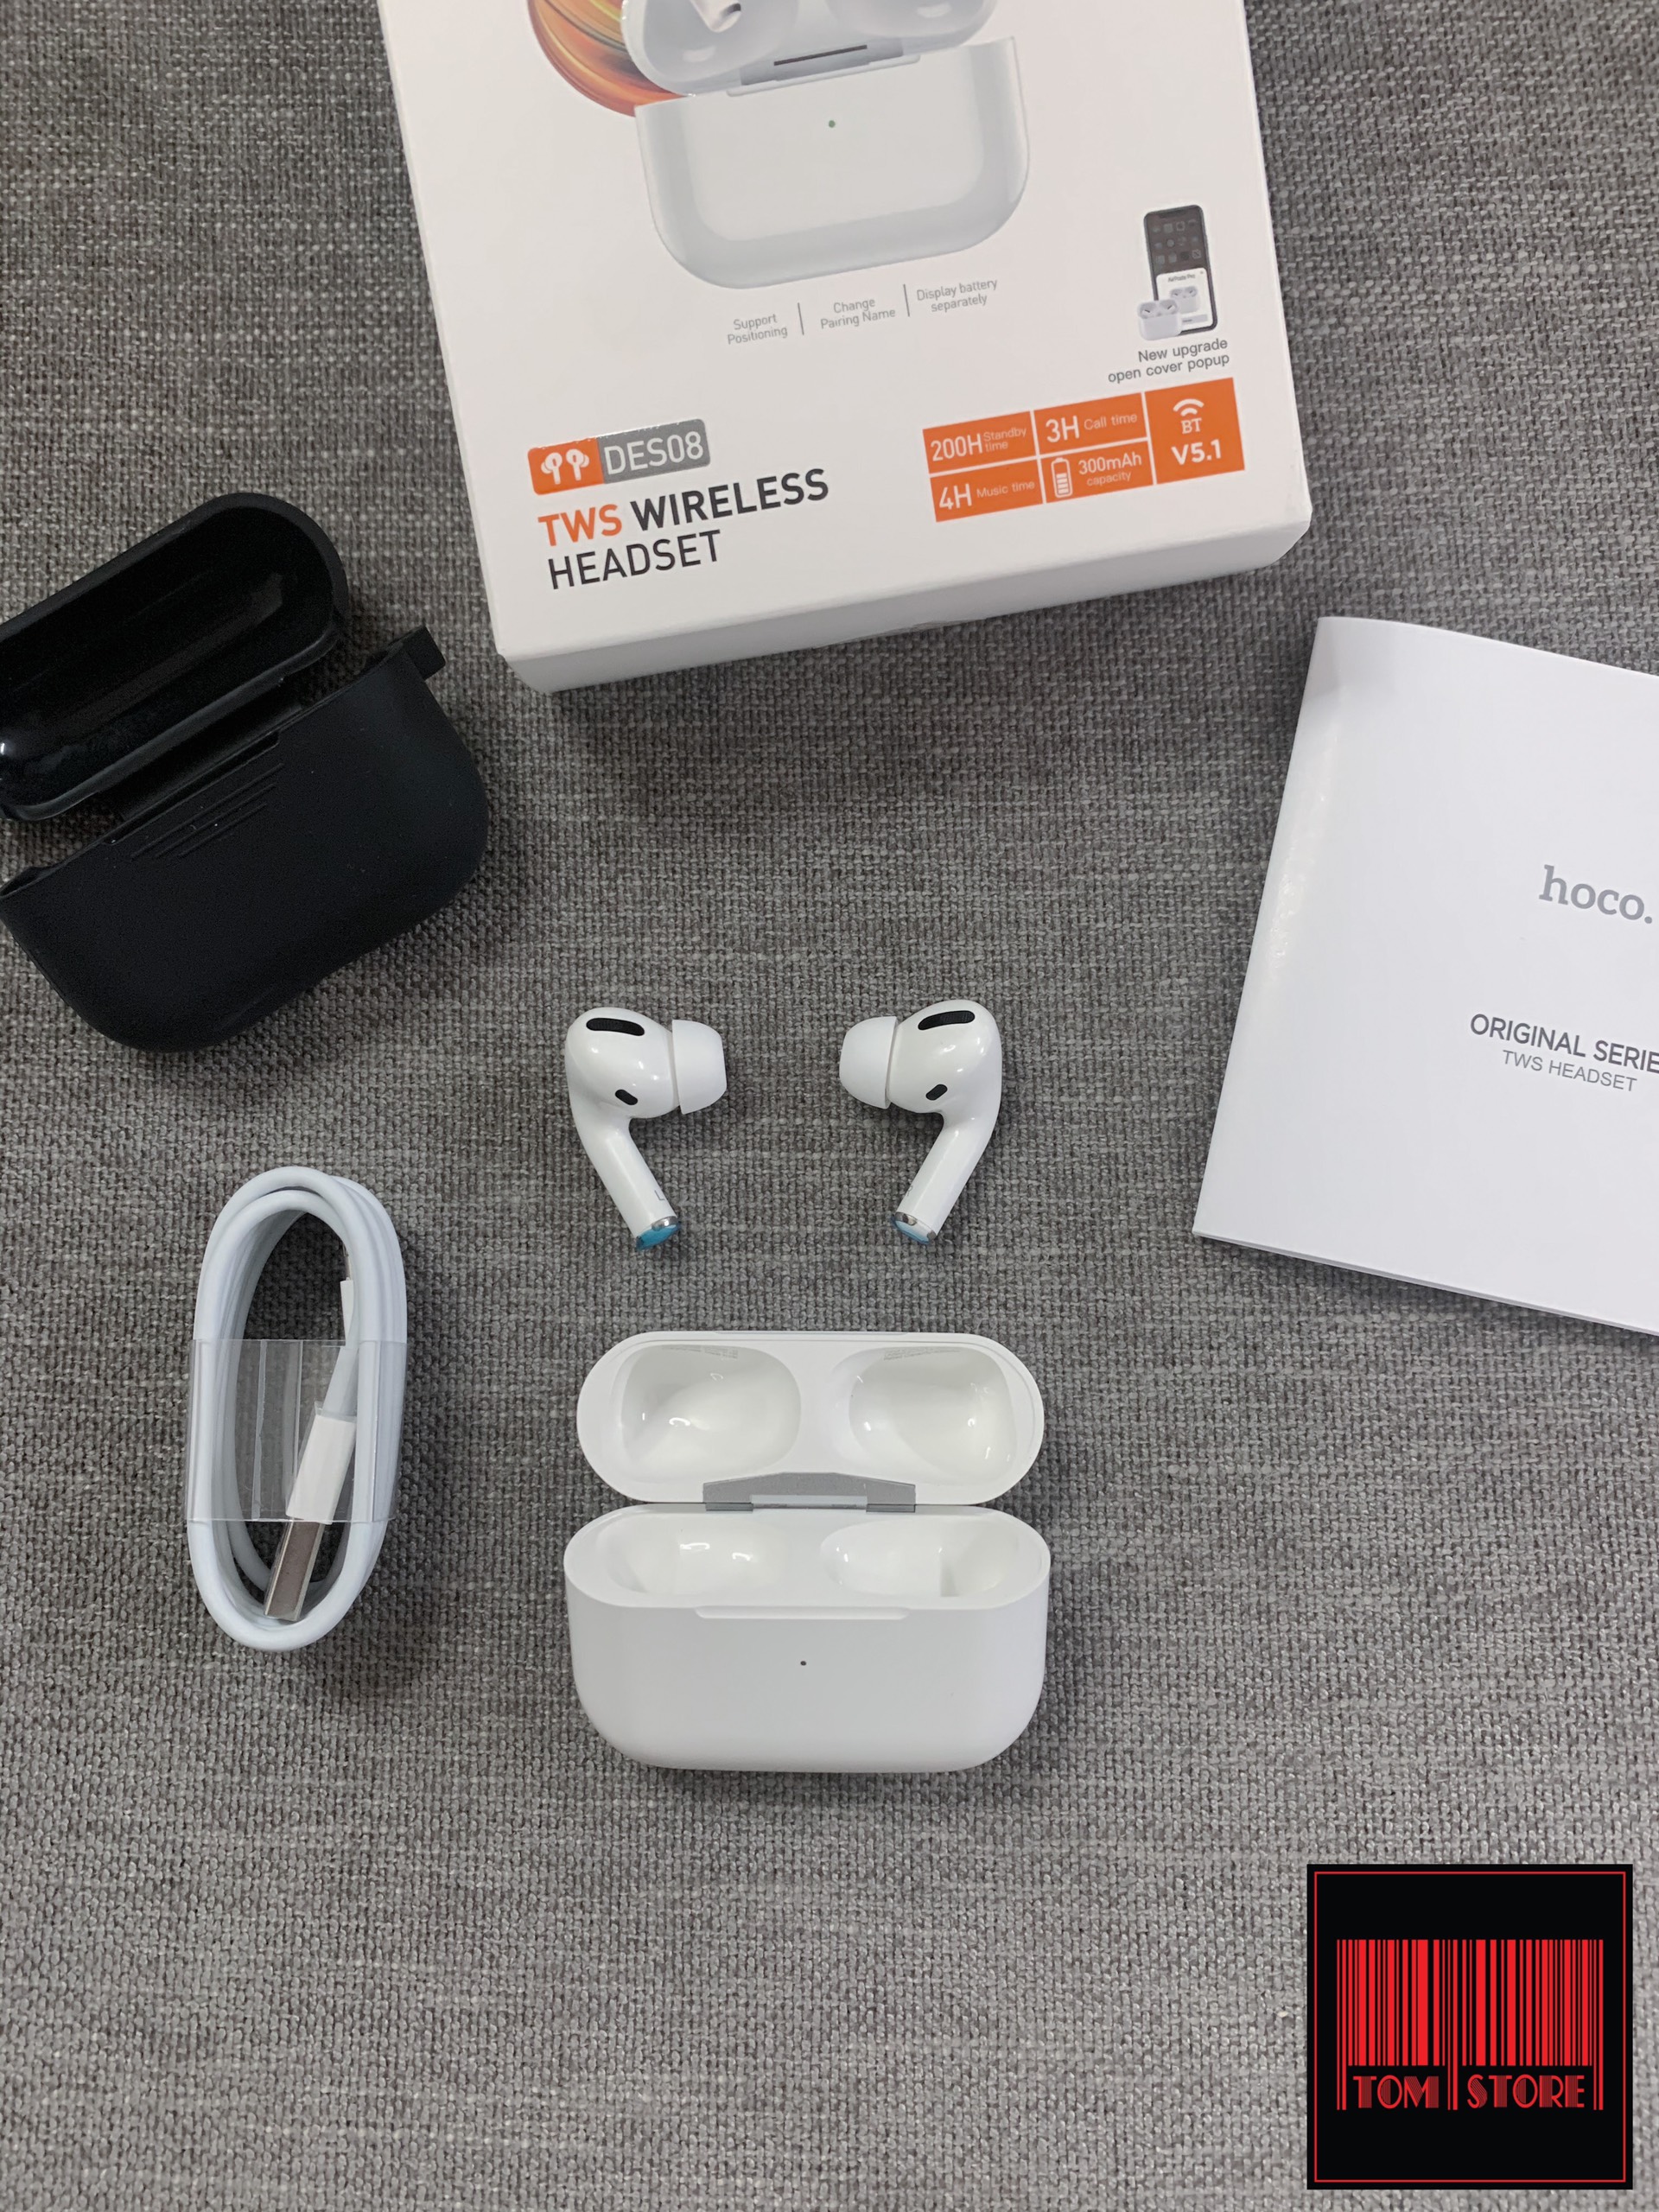 Tai nghe Bluetooth V5.1 Hoco DES08 hỗ trợ khử tiếng ồn cảm biến định vị